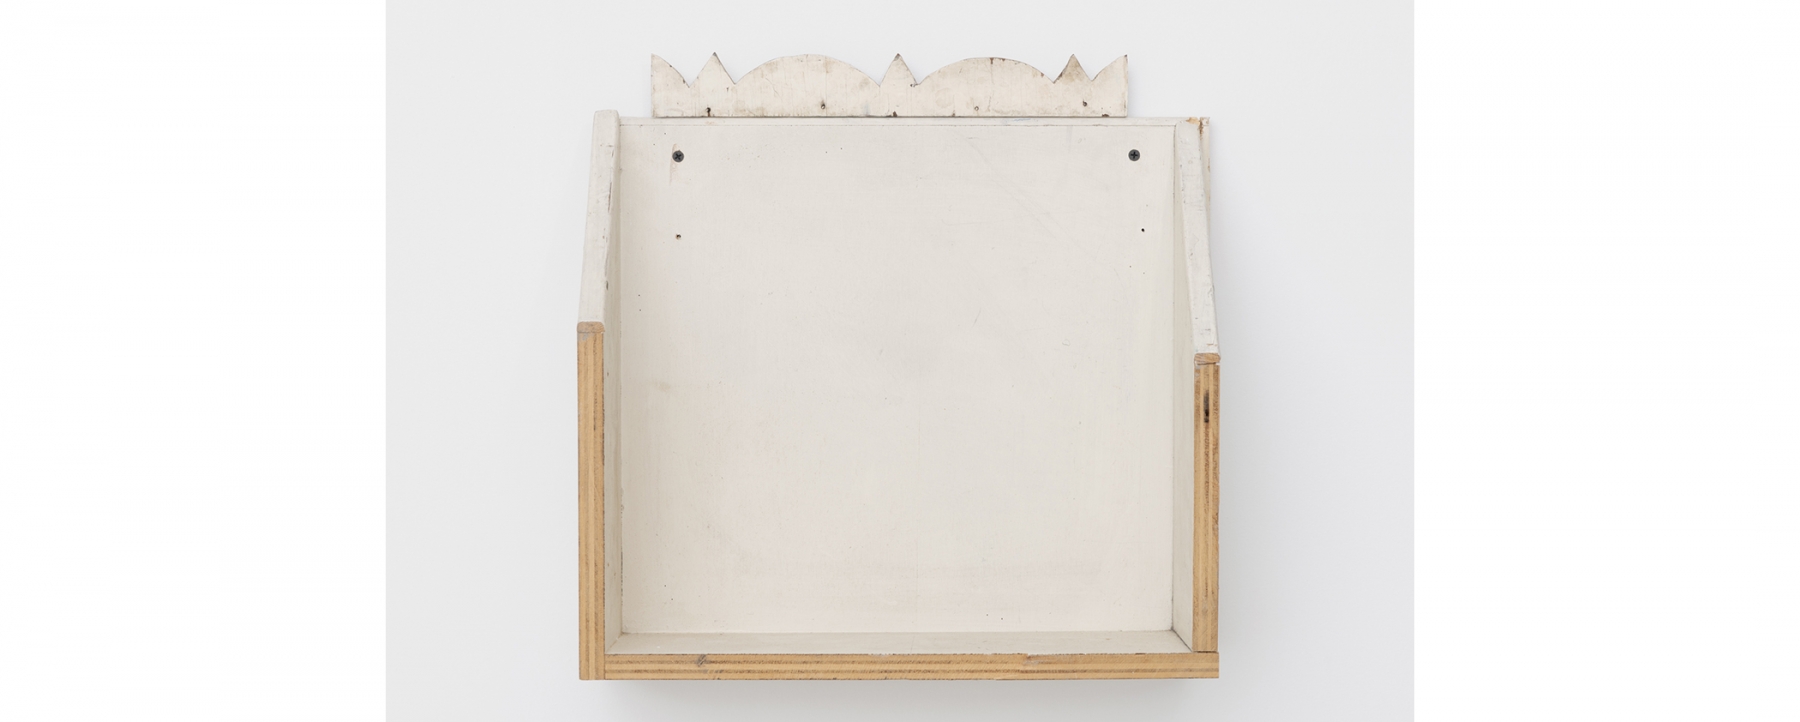 Gedi Sibony

The Lunar Set, 2020

Salvaged wood shelf

17 x 17 x 7 1/2 inches (43.2 x 43.2 x 19.1 cm)